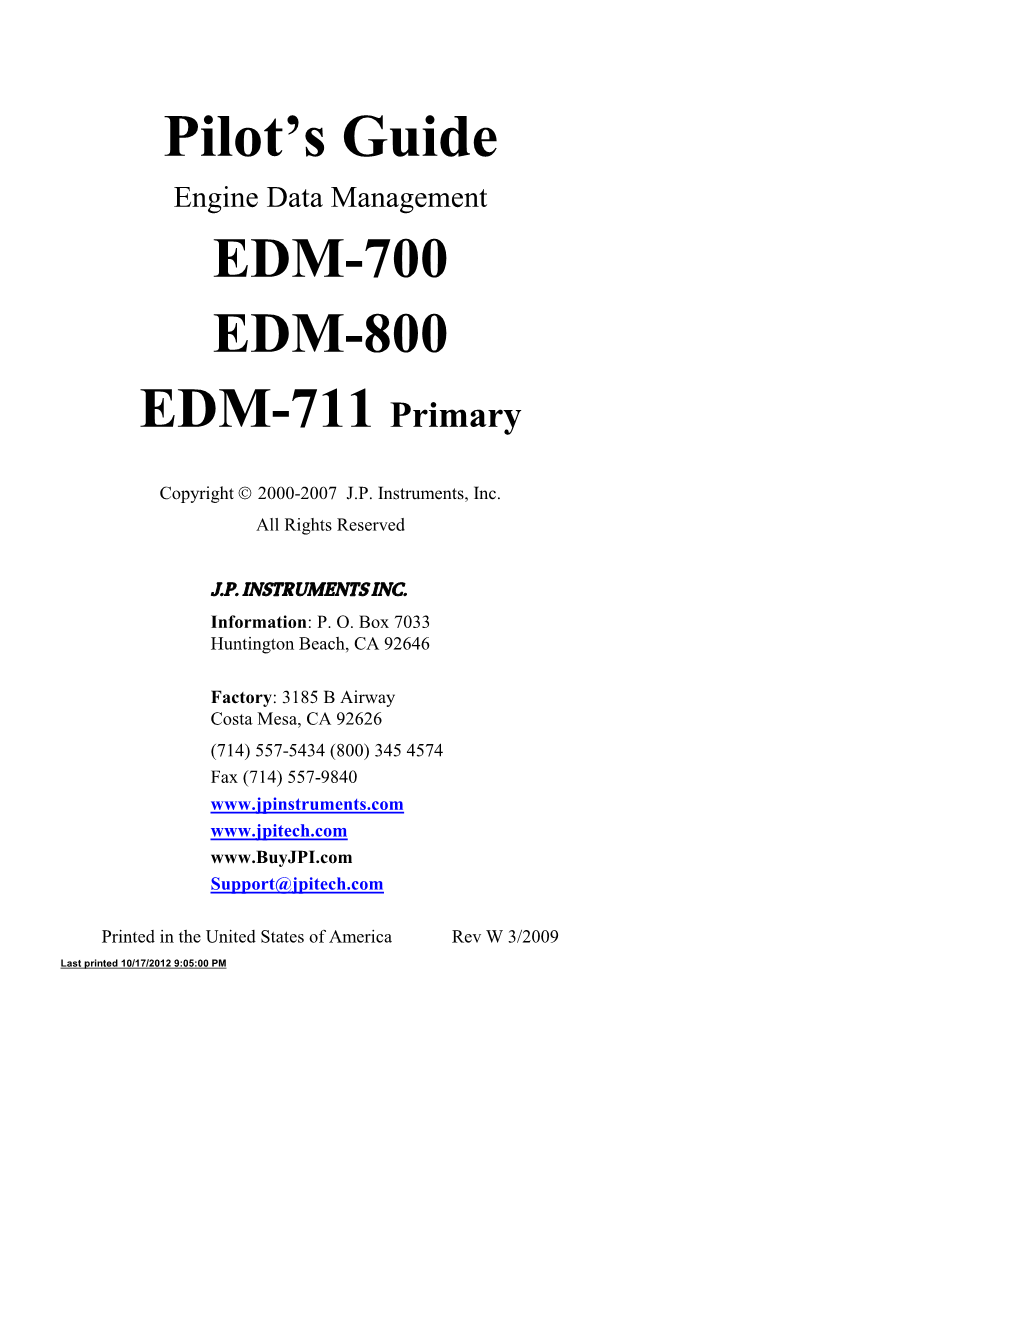 JPI's EDM-700